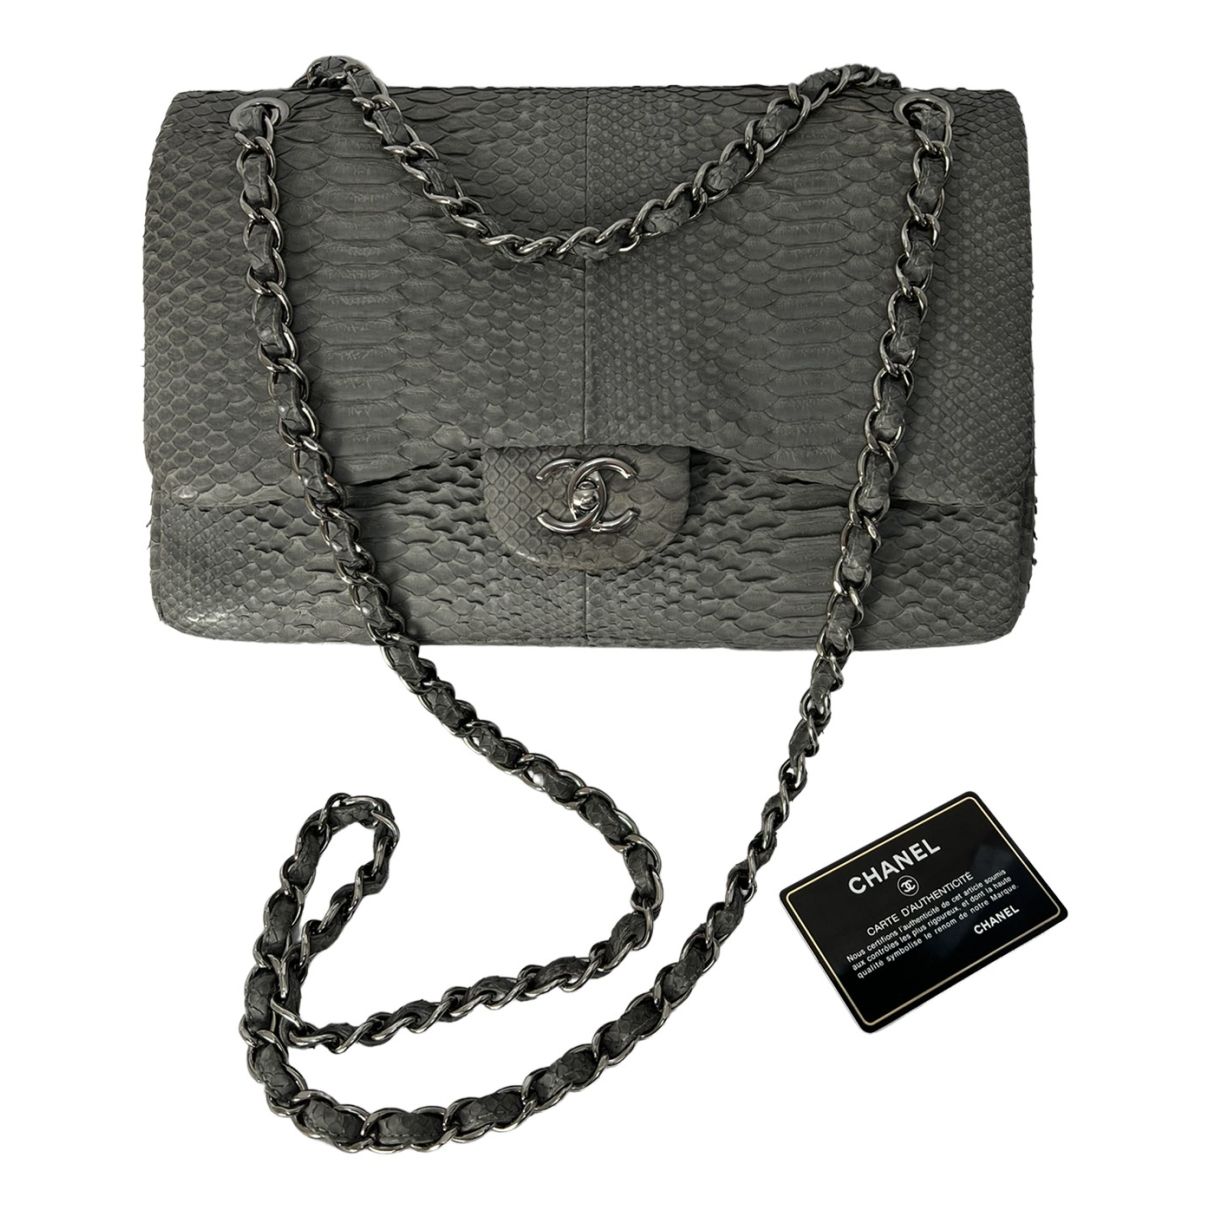 Timeless/Classique python crossbody bag Chanel